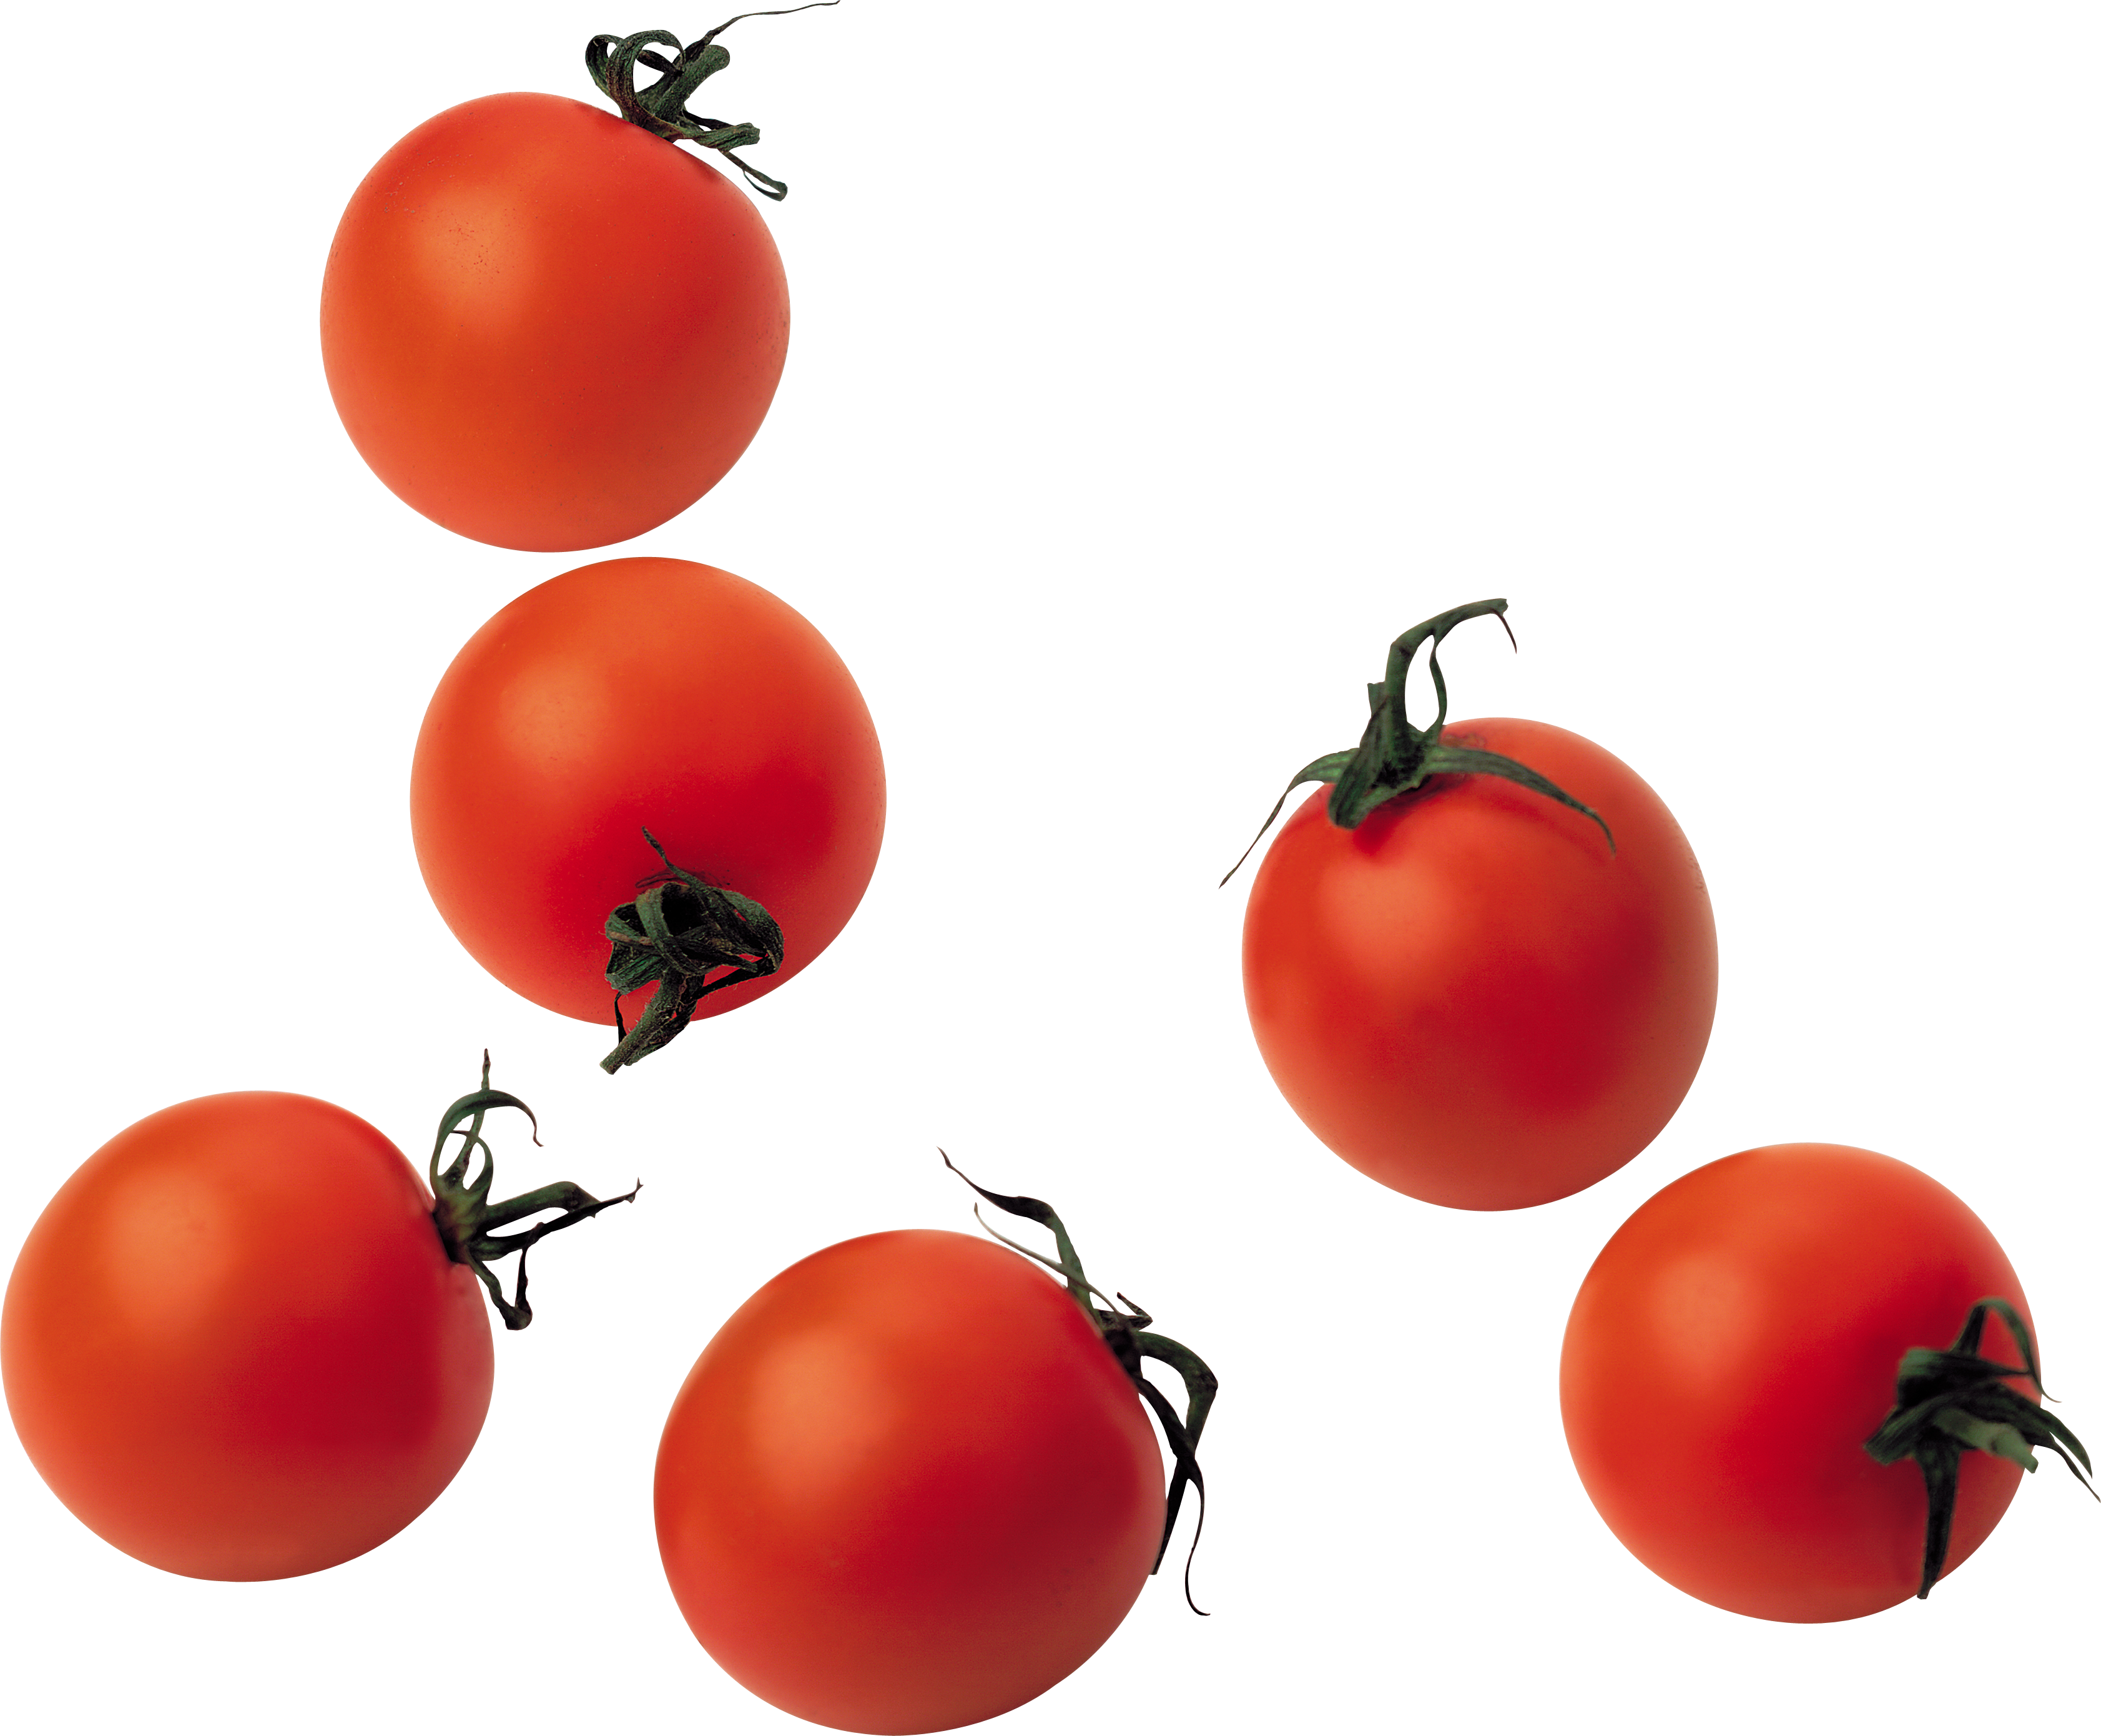 Pomodorini